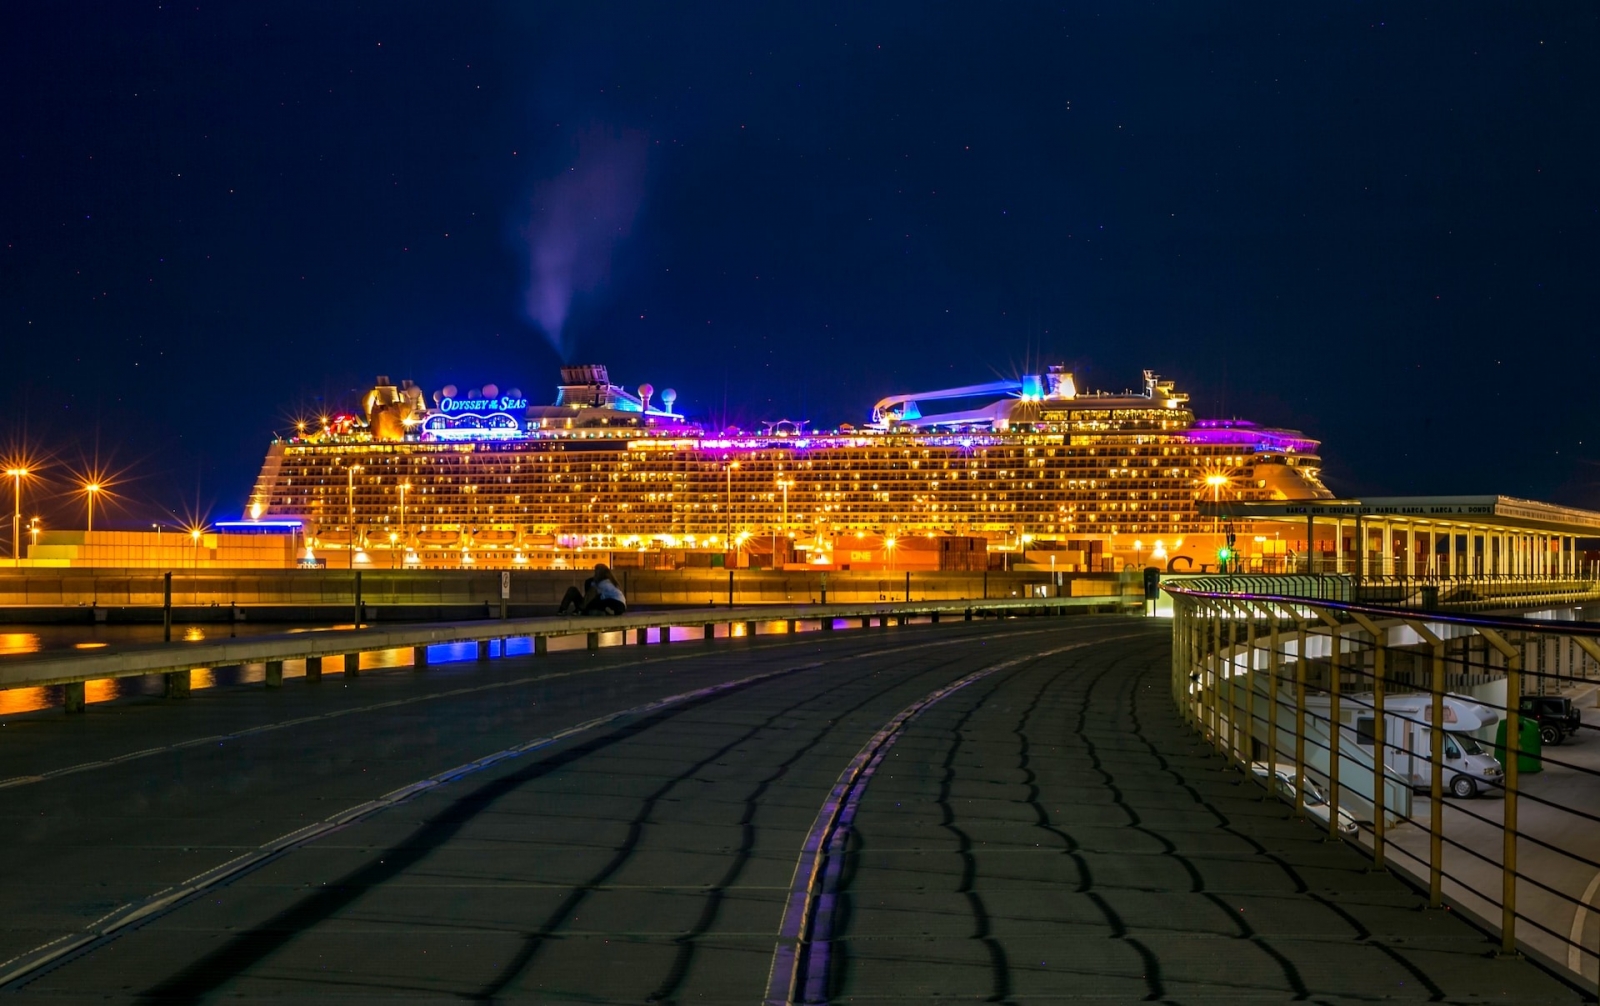 В оживленном портовом городе Валенсия колоссальный круизный лайнер доминирует над ночным горизонтом, его освещенный фасад отражается в мерцающих водах.